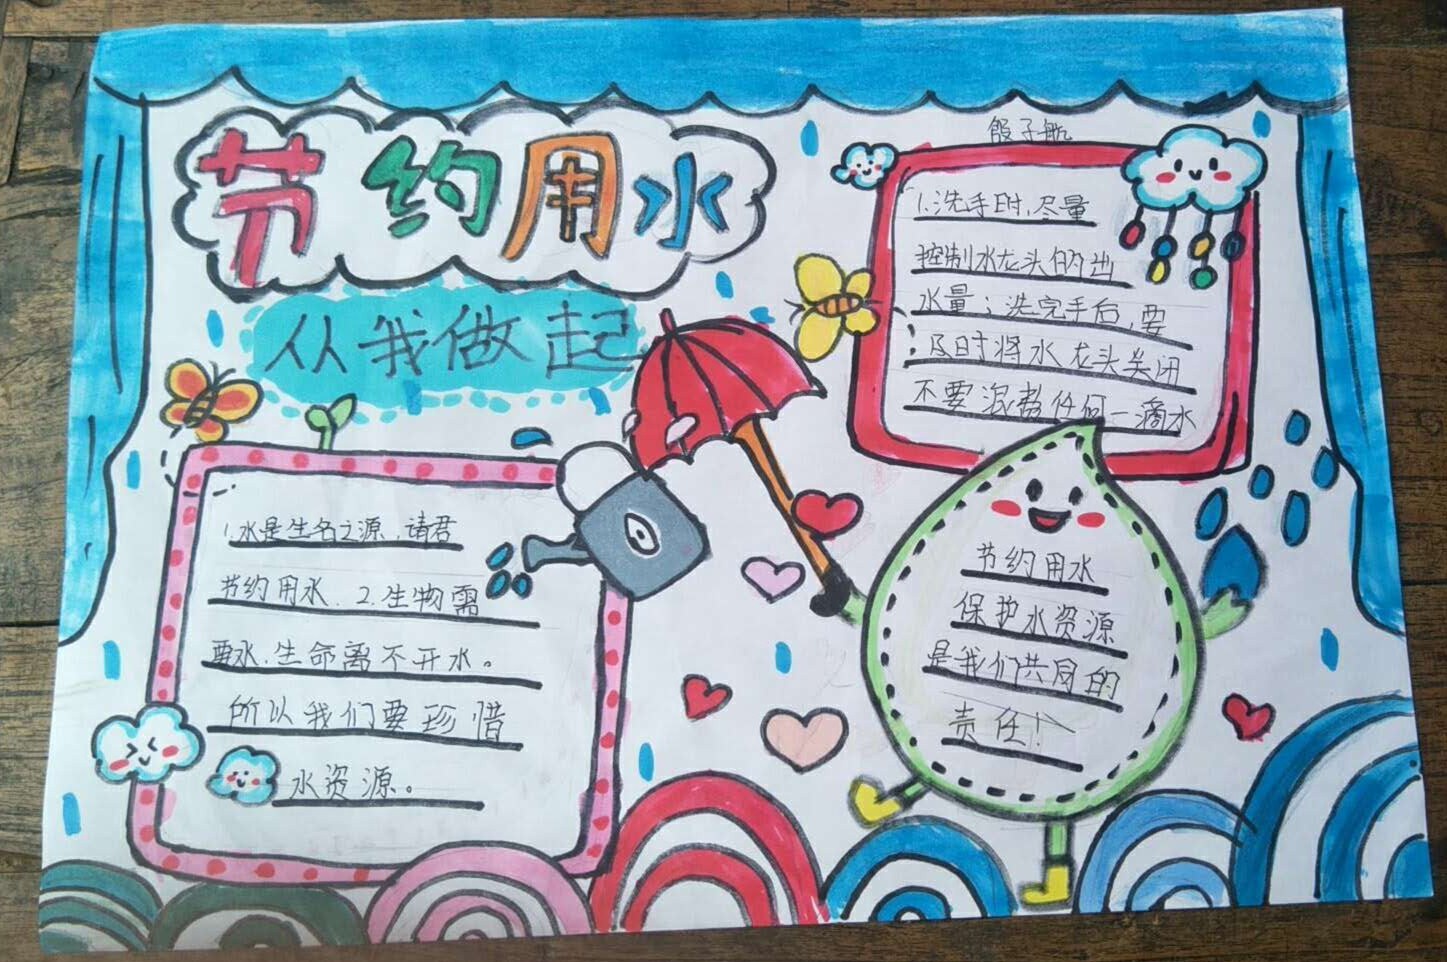 节水护水 人人有责 ——第五小学开展"世界水日""中国